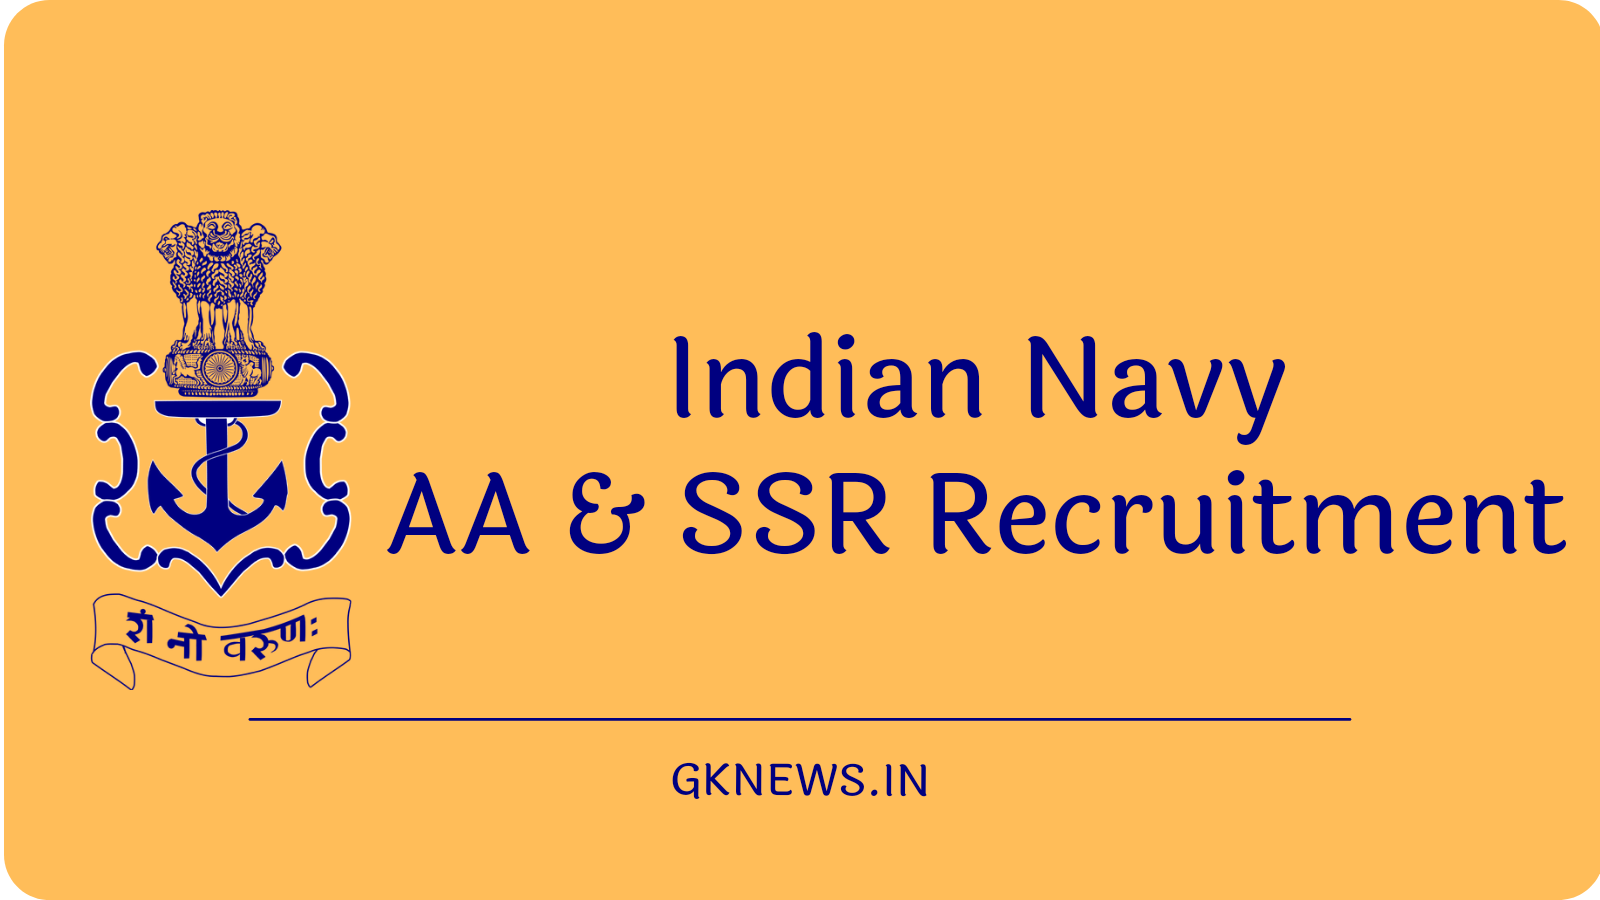 Indian Navy AA & SSR Recruitment 2022